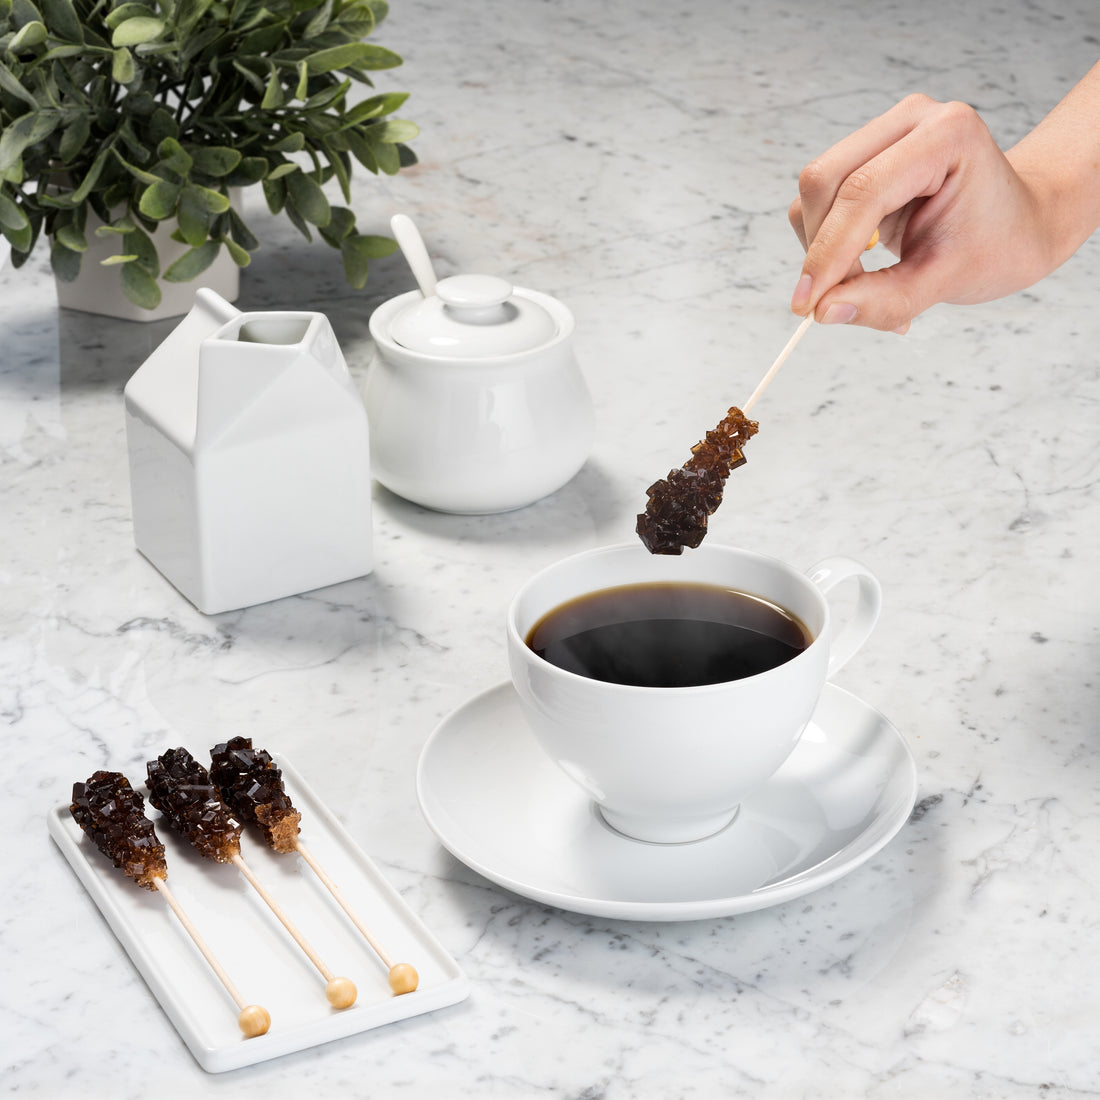 Amber and White Cafe Sugar Sticks - Original Sugar Flavor